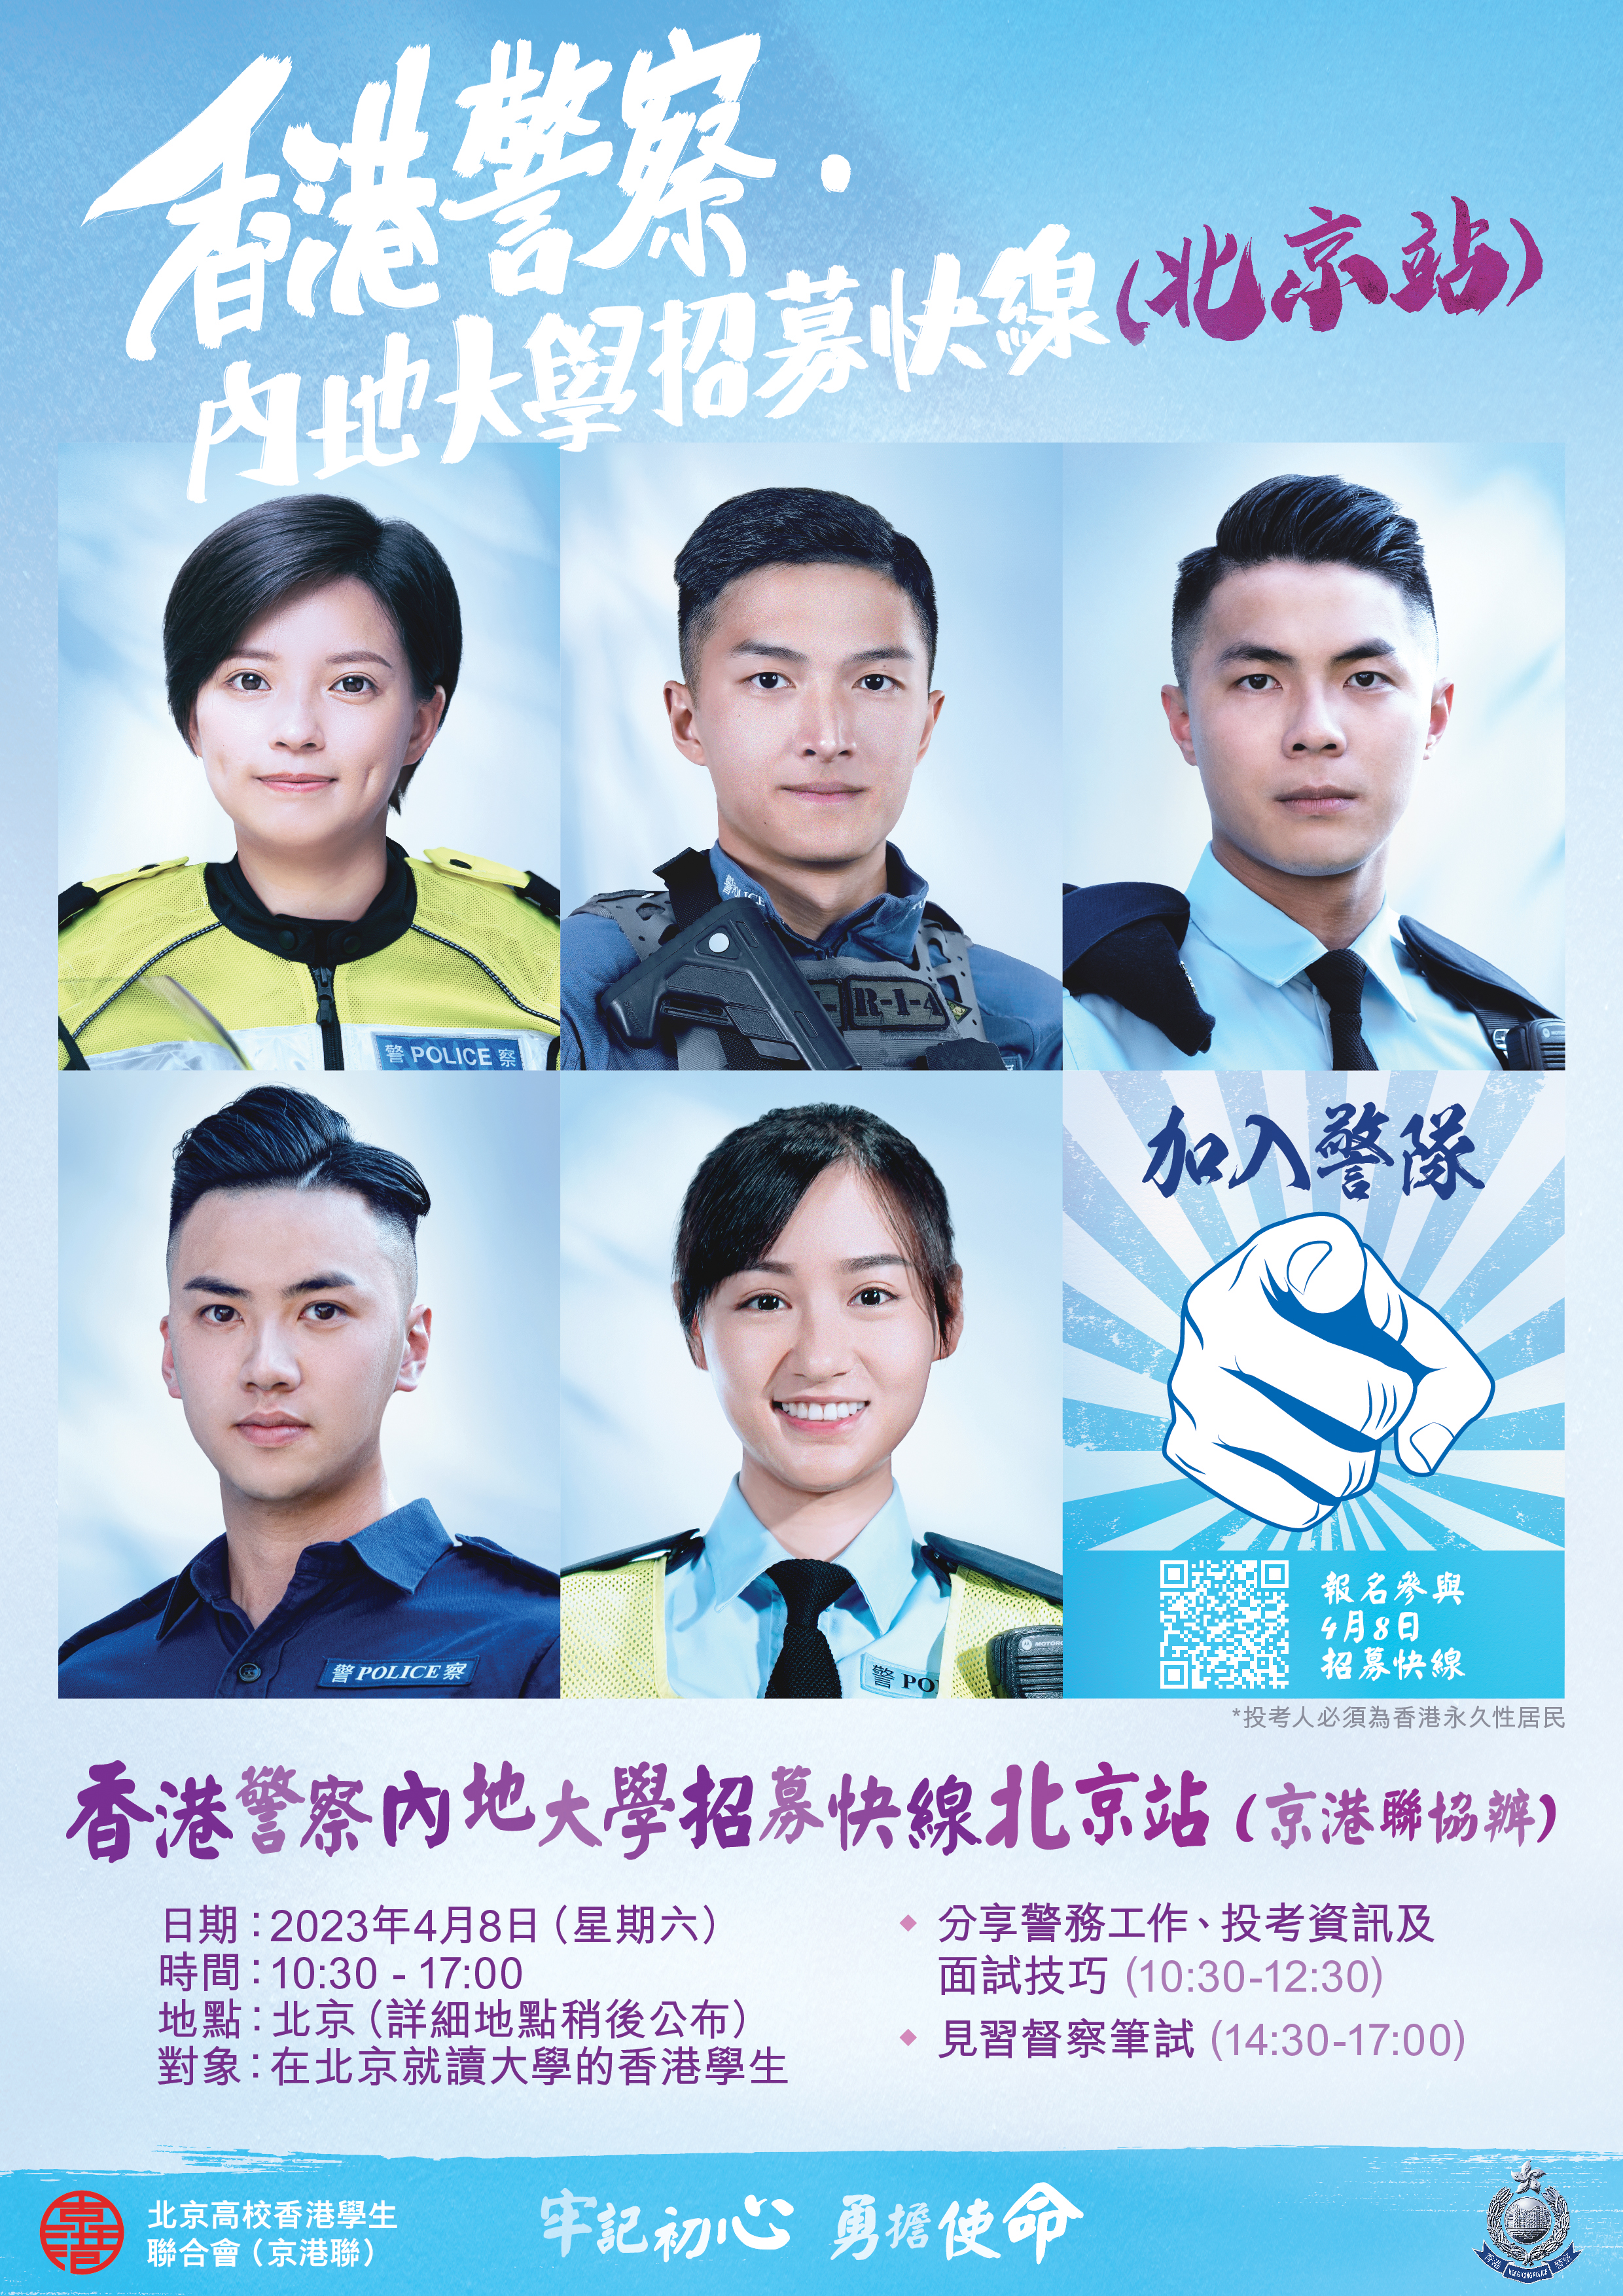 「香港警察‧内地大学招募快线」- 北京站